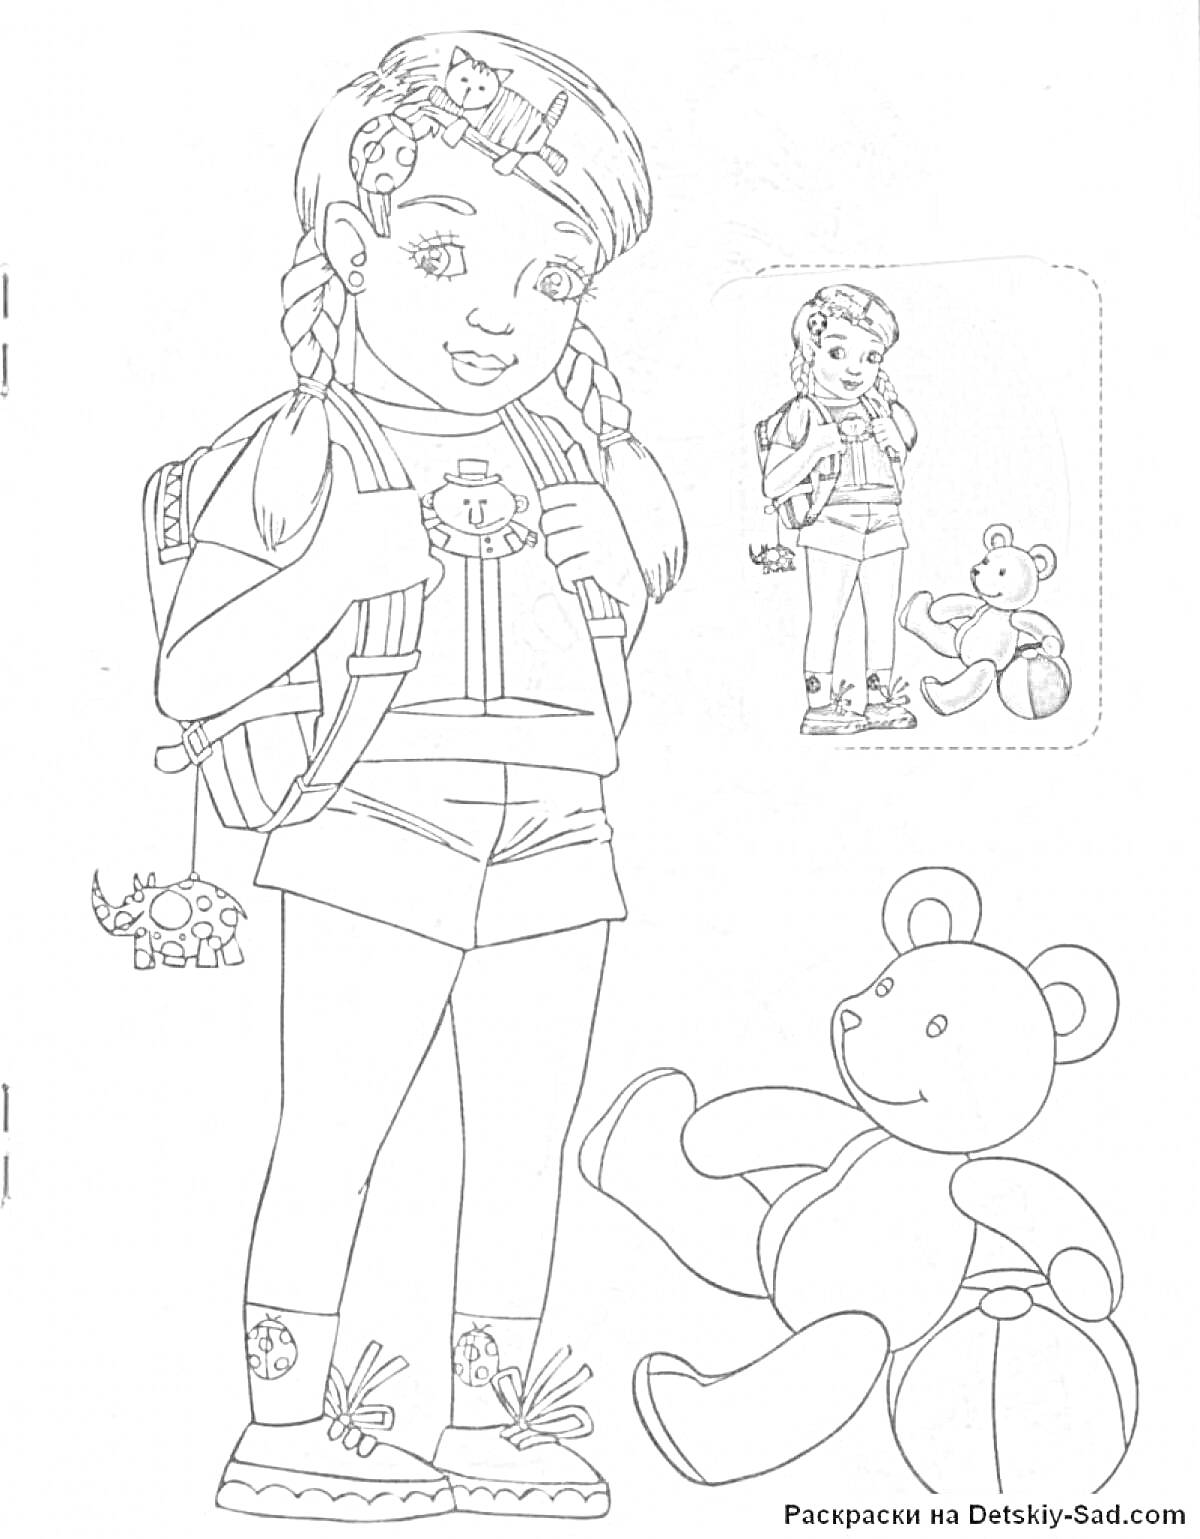 Девочка с рюкзаком, медведь, динозаврик и наклейка девочки и медведя с мячом